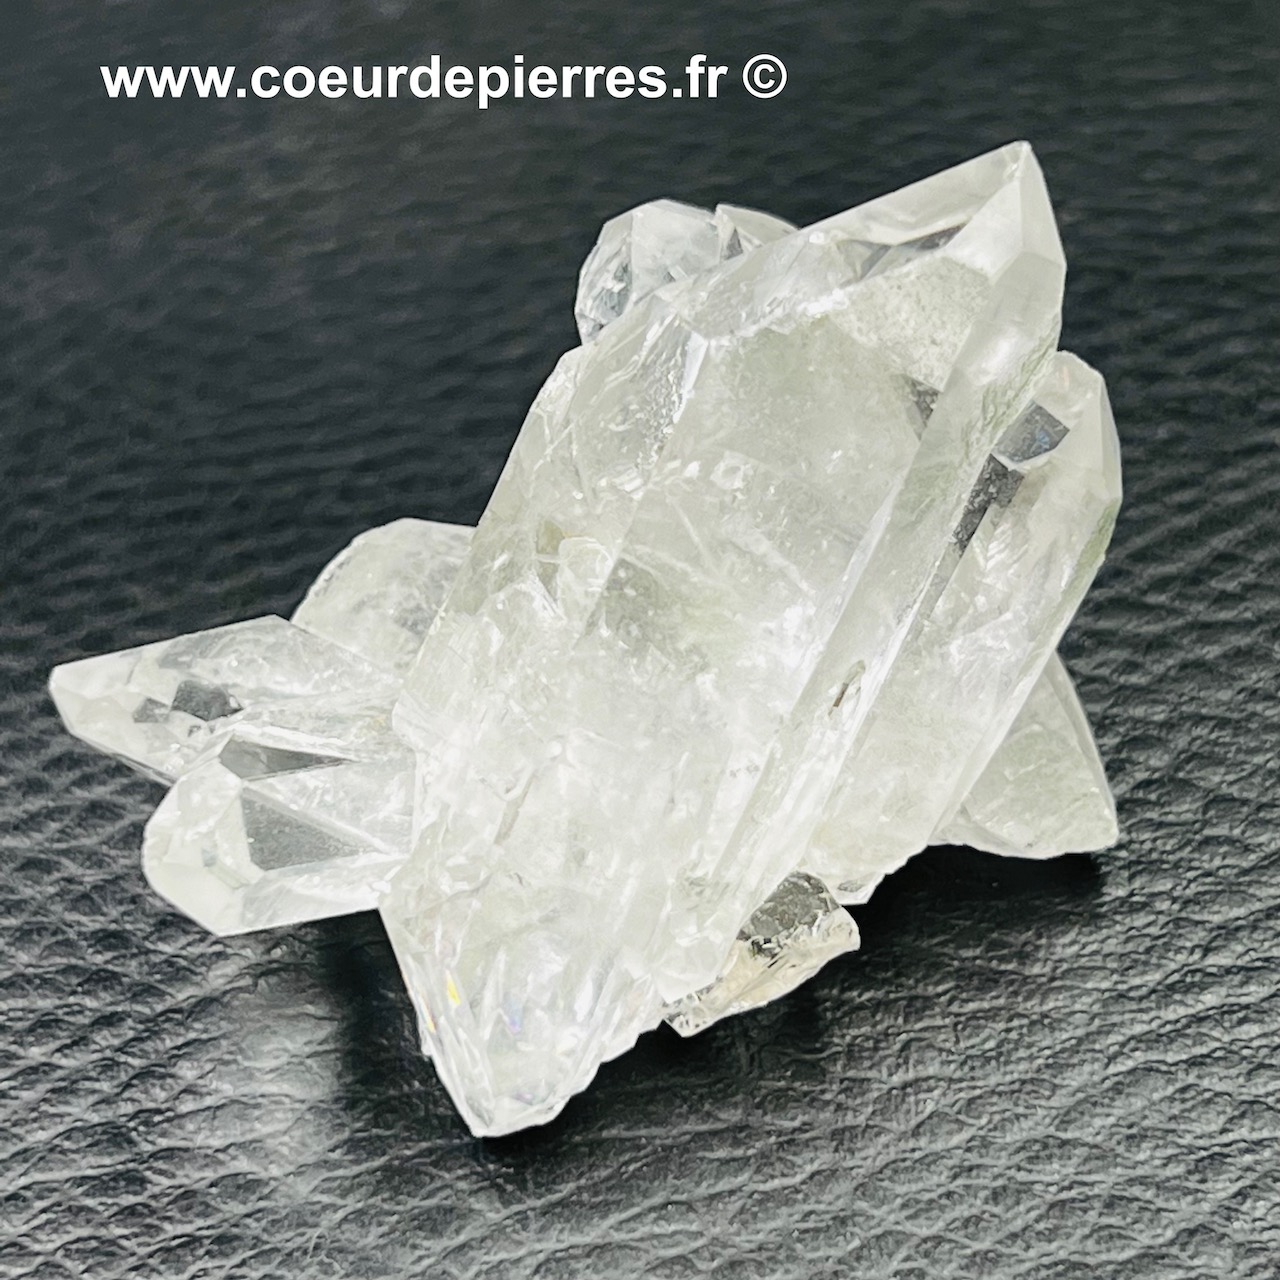 Druse de cristal de roche du Brésil (réf gq15)